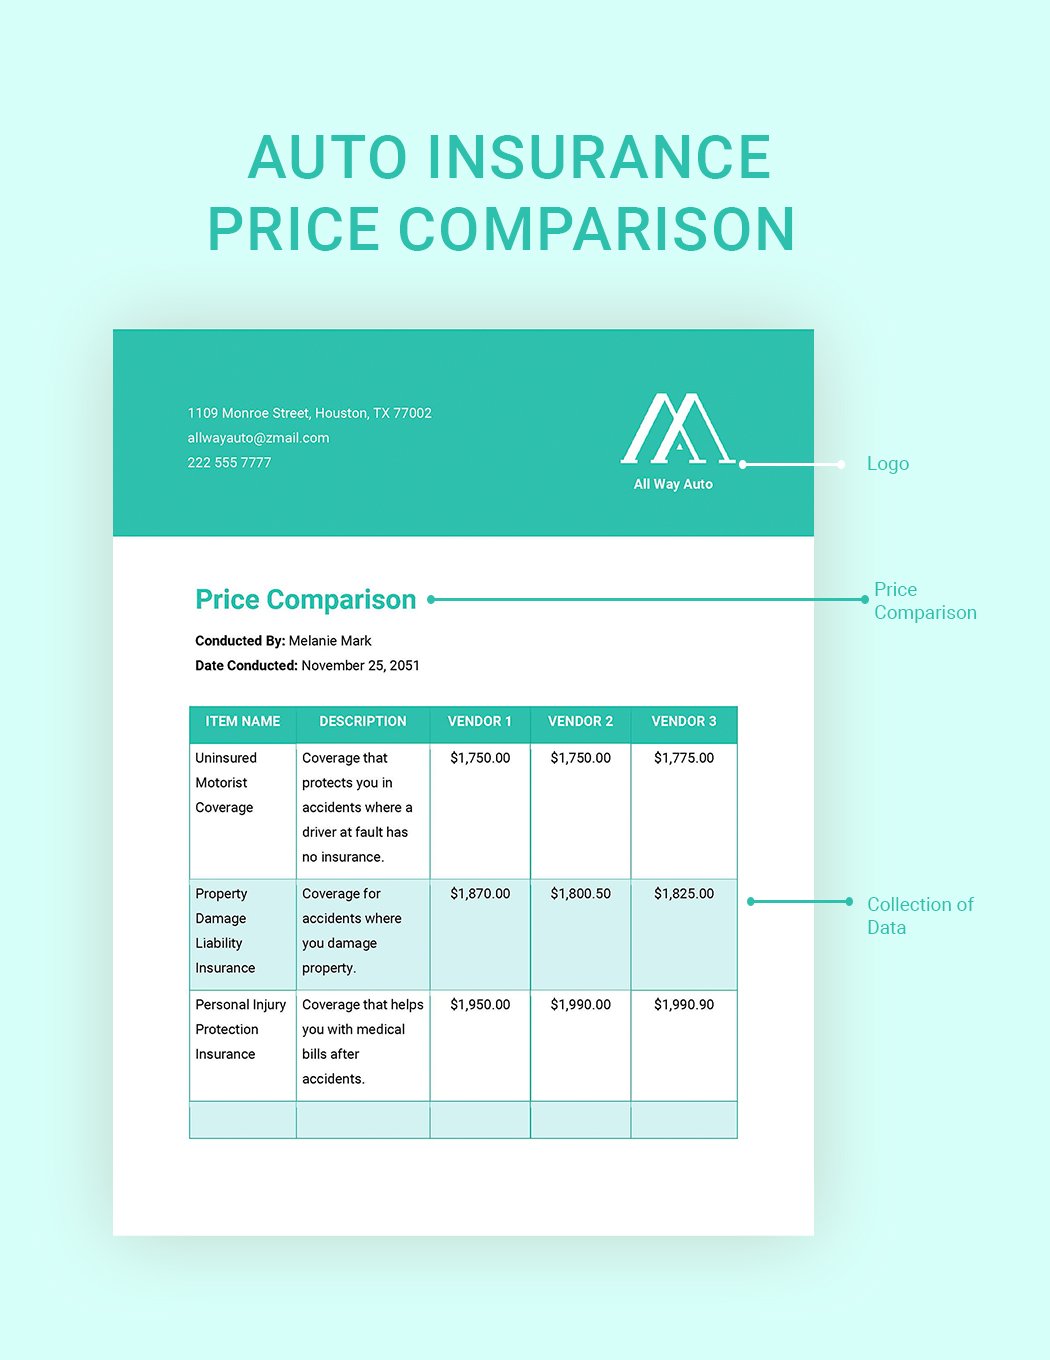 Auto Insurance Price Comparison Template